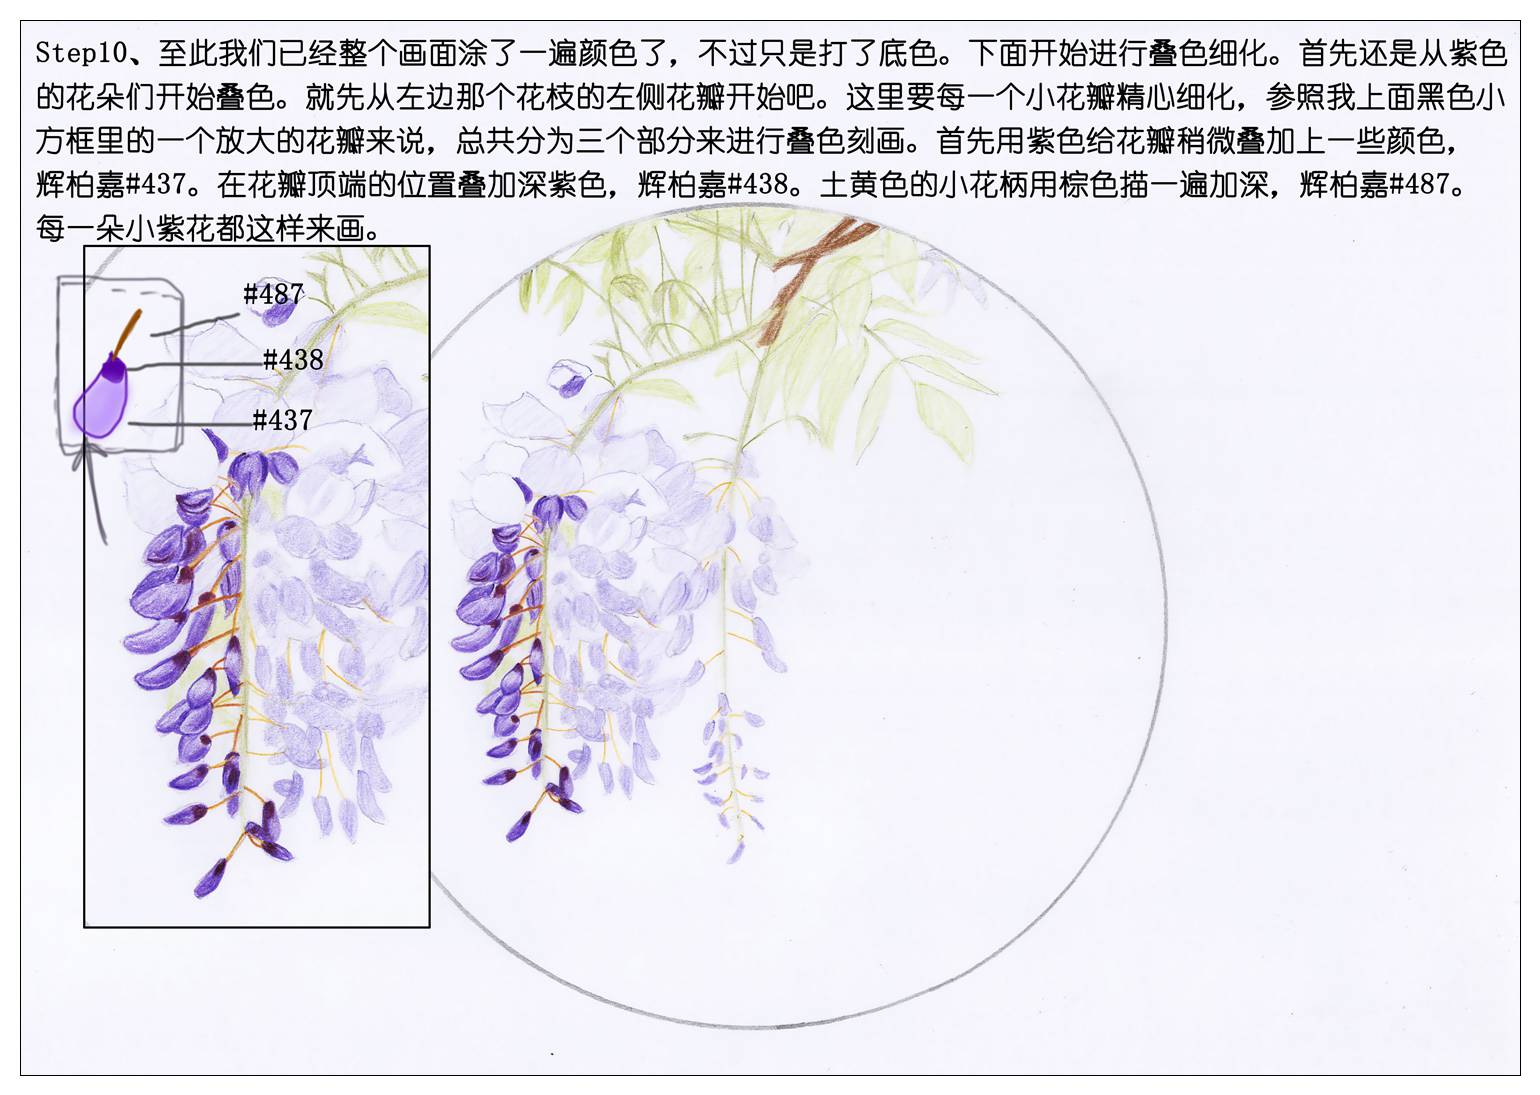 紫藤花解剖结构图图片